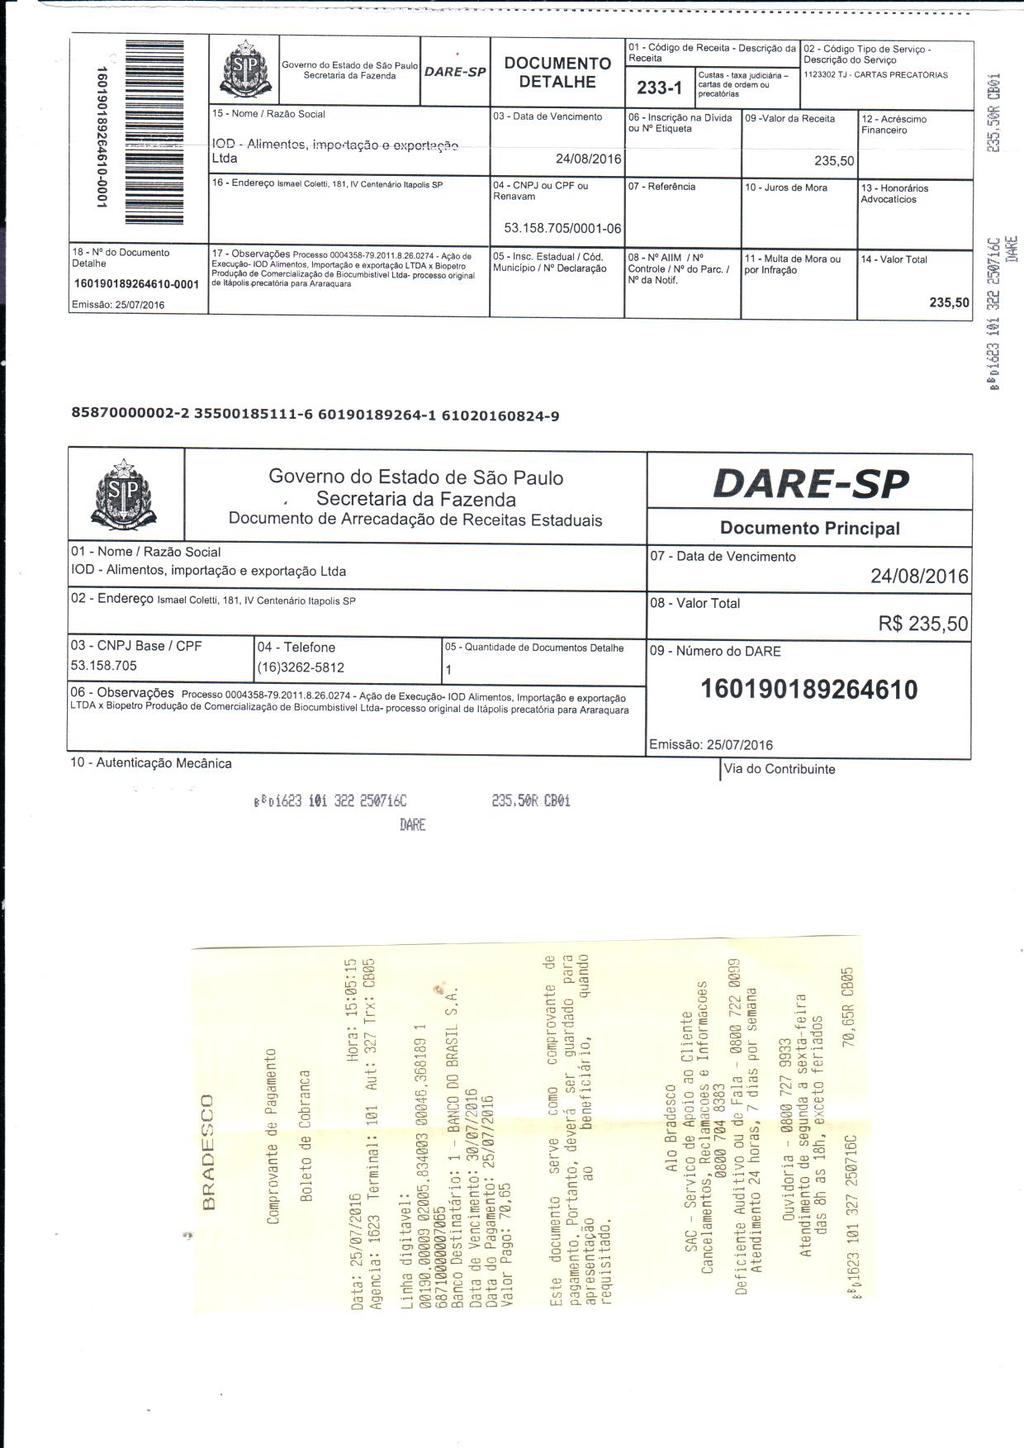 fls. 4 Este documento é cópia do original, assinado digitalmente por LEANDRO PROSPERO e Tribunal de Justica Sao Paulo, protocolado em 02/08/2016 às 15:29, sob o número